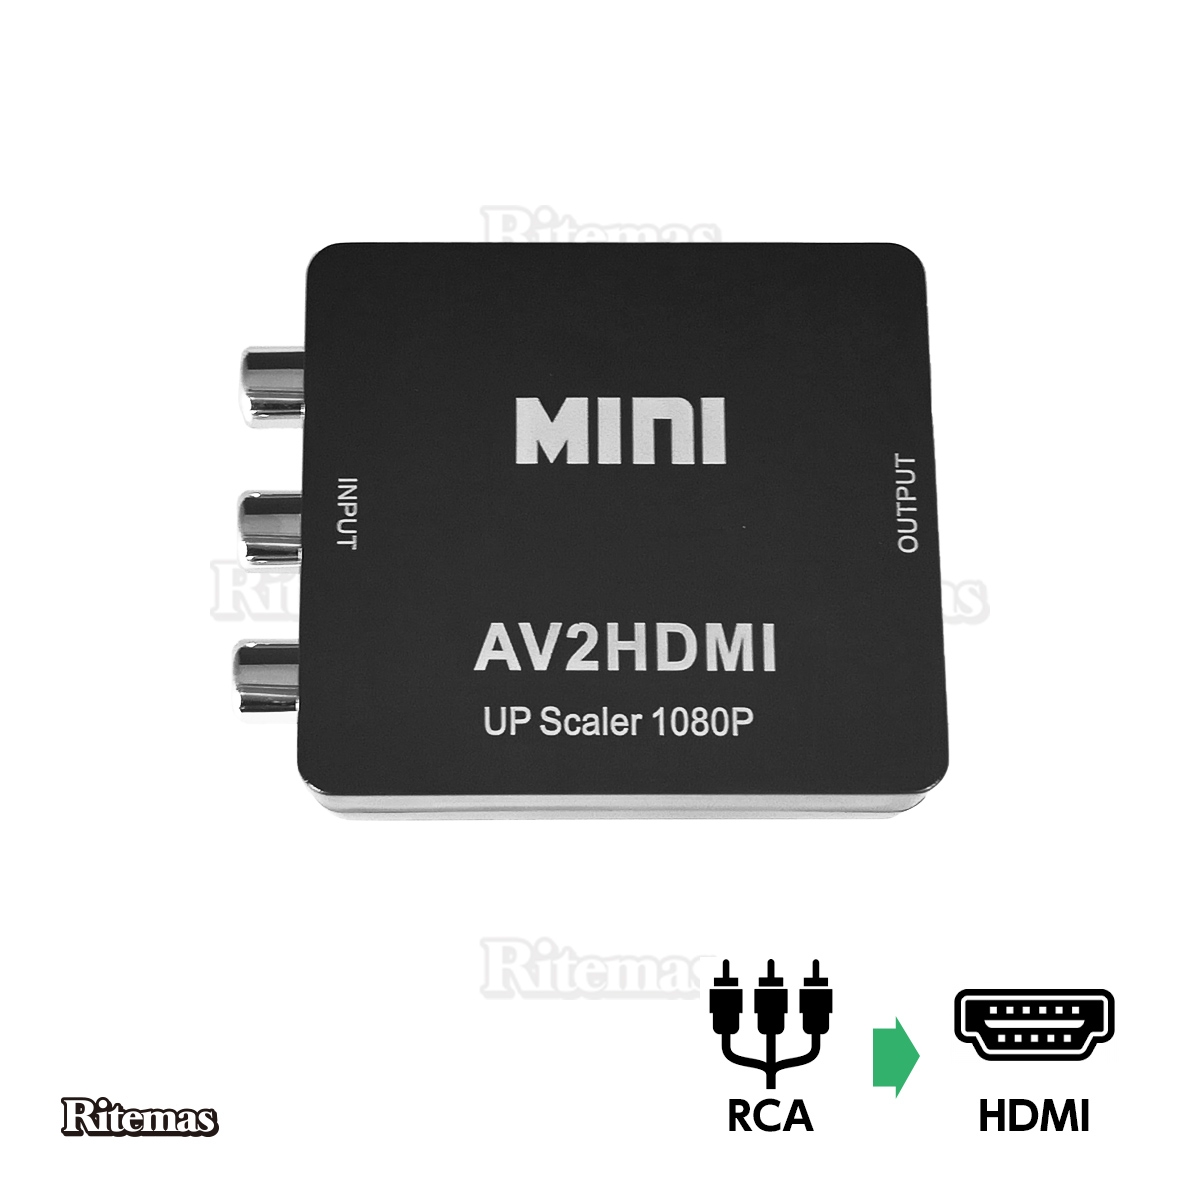 爆安RCA to HDMI変換コンバーター USBケーブル付き アダプター hdmi AV2HDMI hdmi出力 720p 高解像度 変換  コネクター AVケーブル HDMI AV コンバーター 1080p コンバーター 変換器 コンポジット入力 音声転送 to コンポジットをHDMIに 変換アダプタ 1080P対応 変換 ...